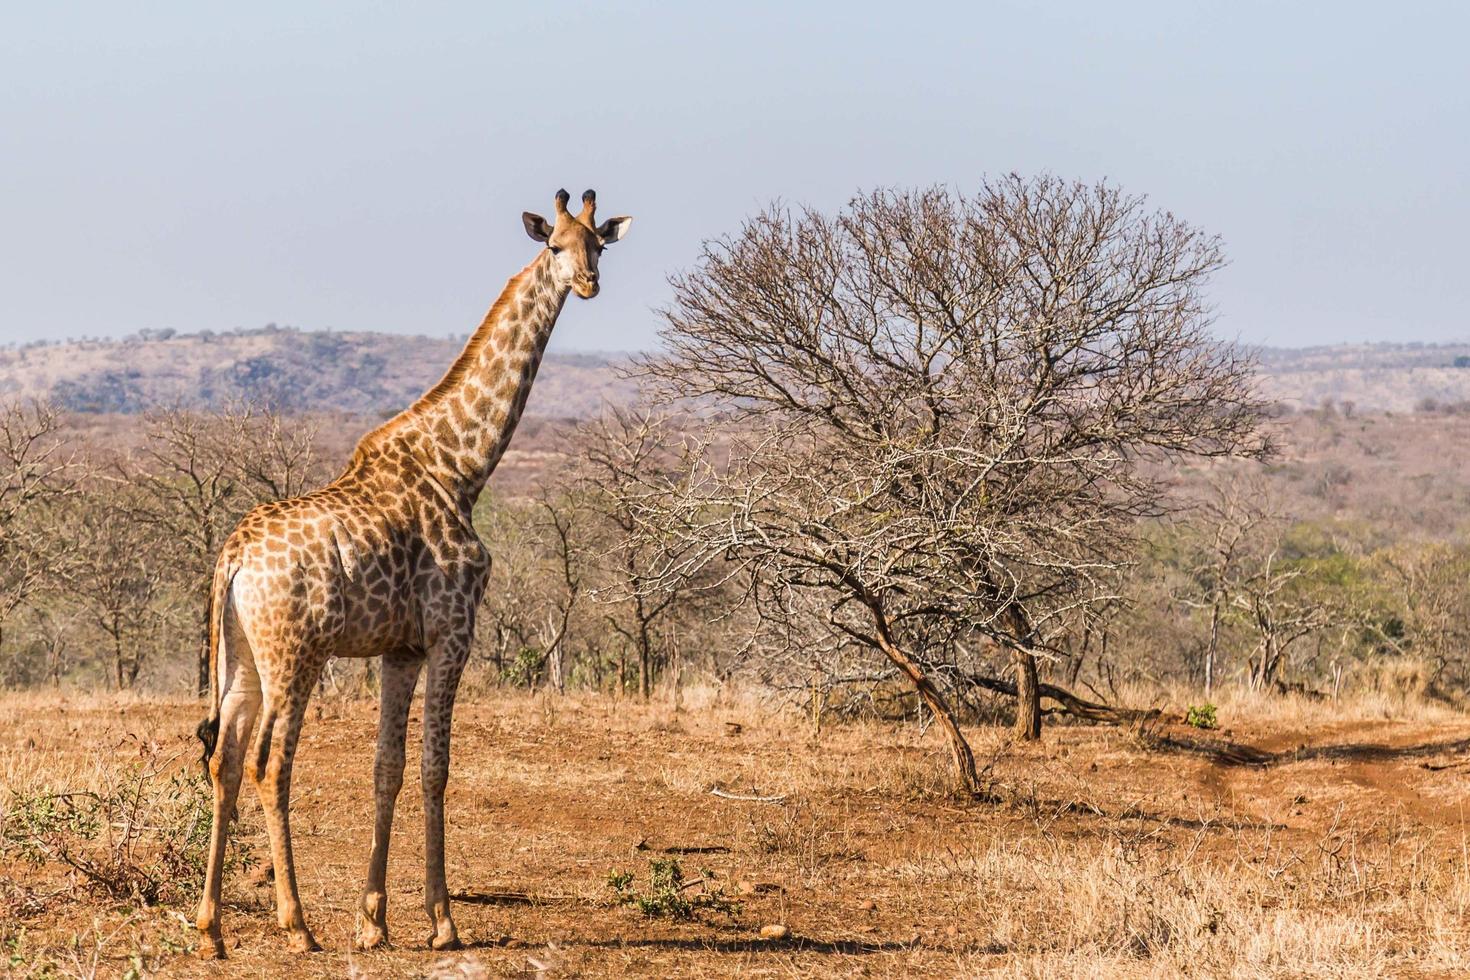 Giraffe in South Africa photo